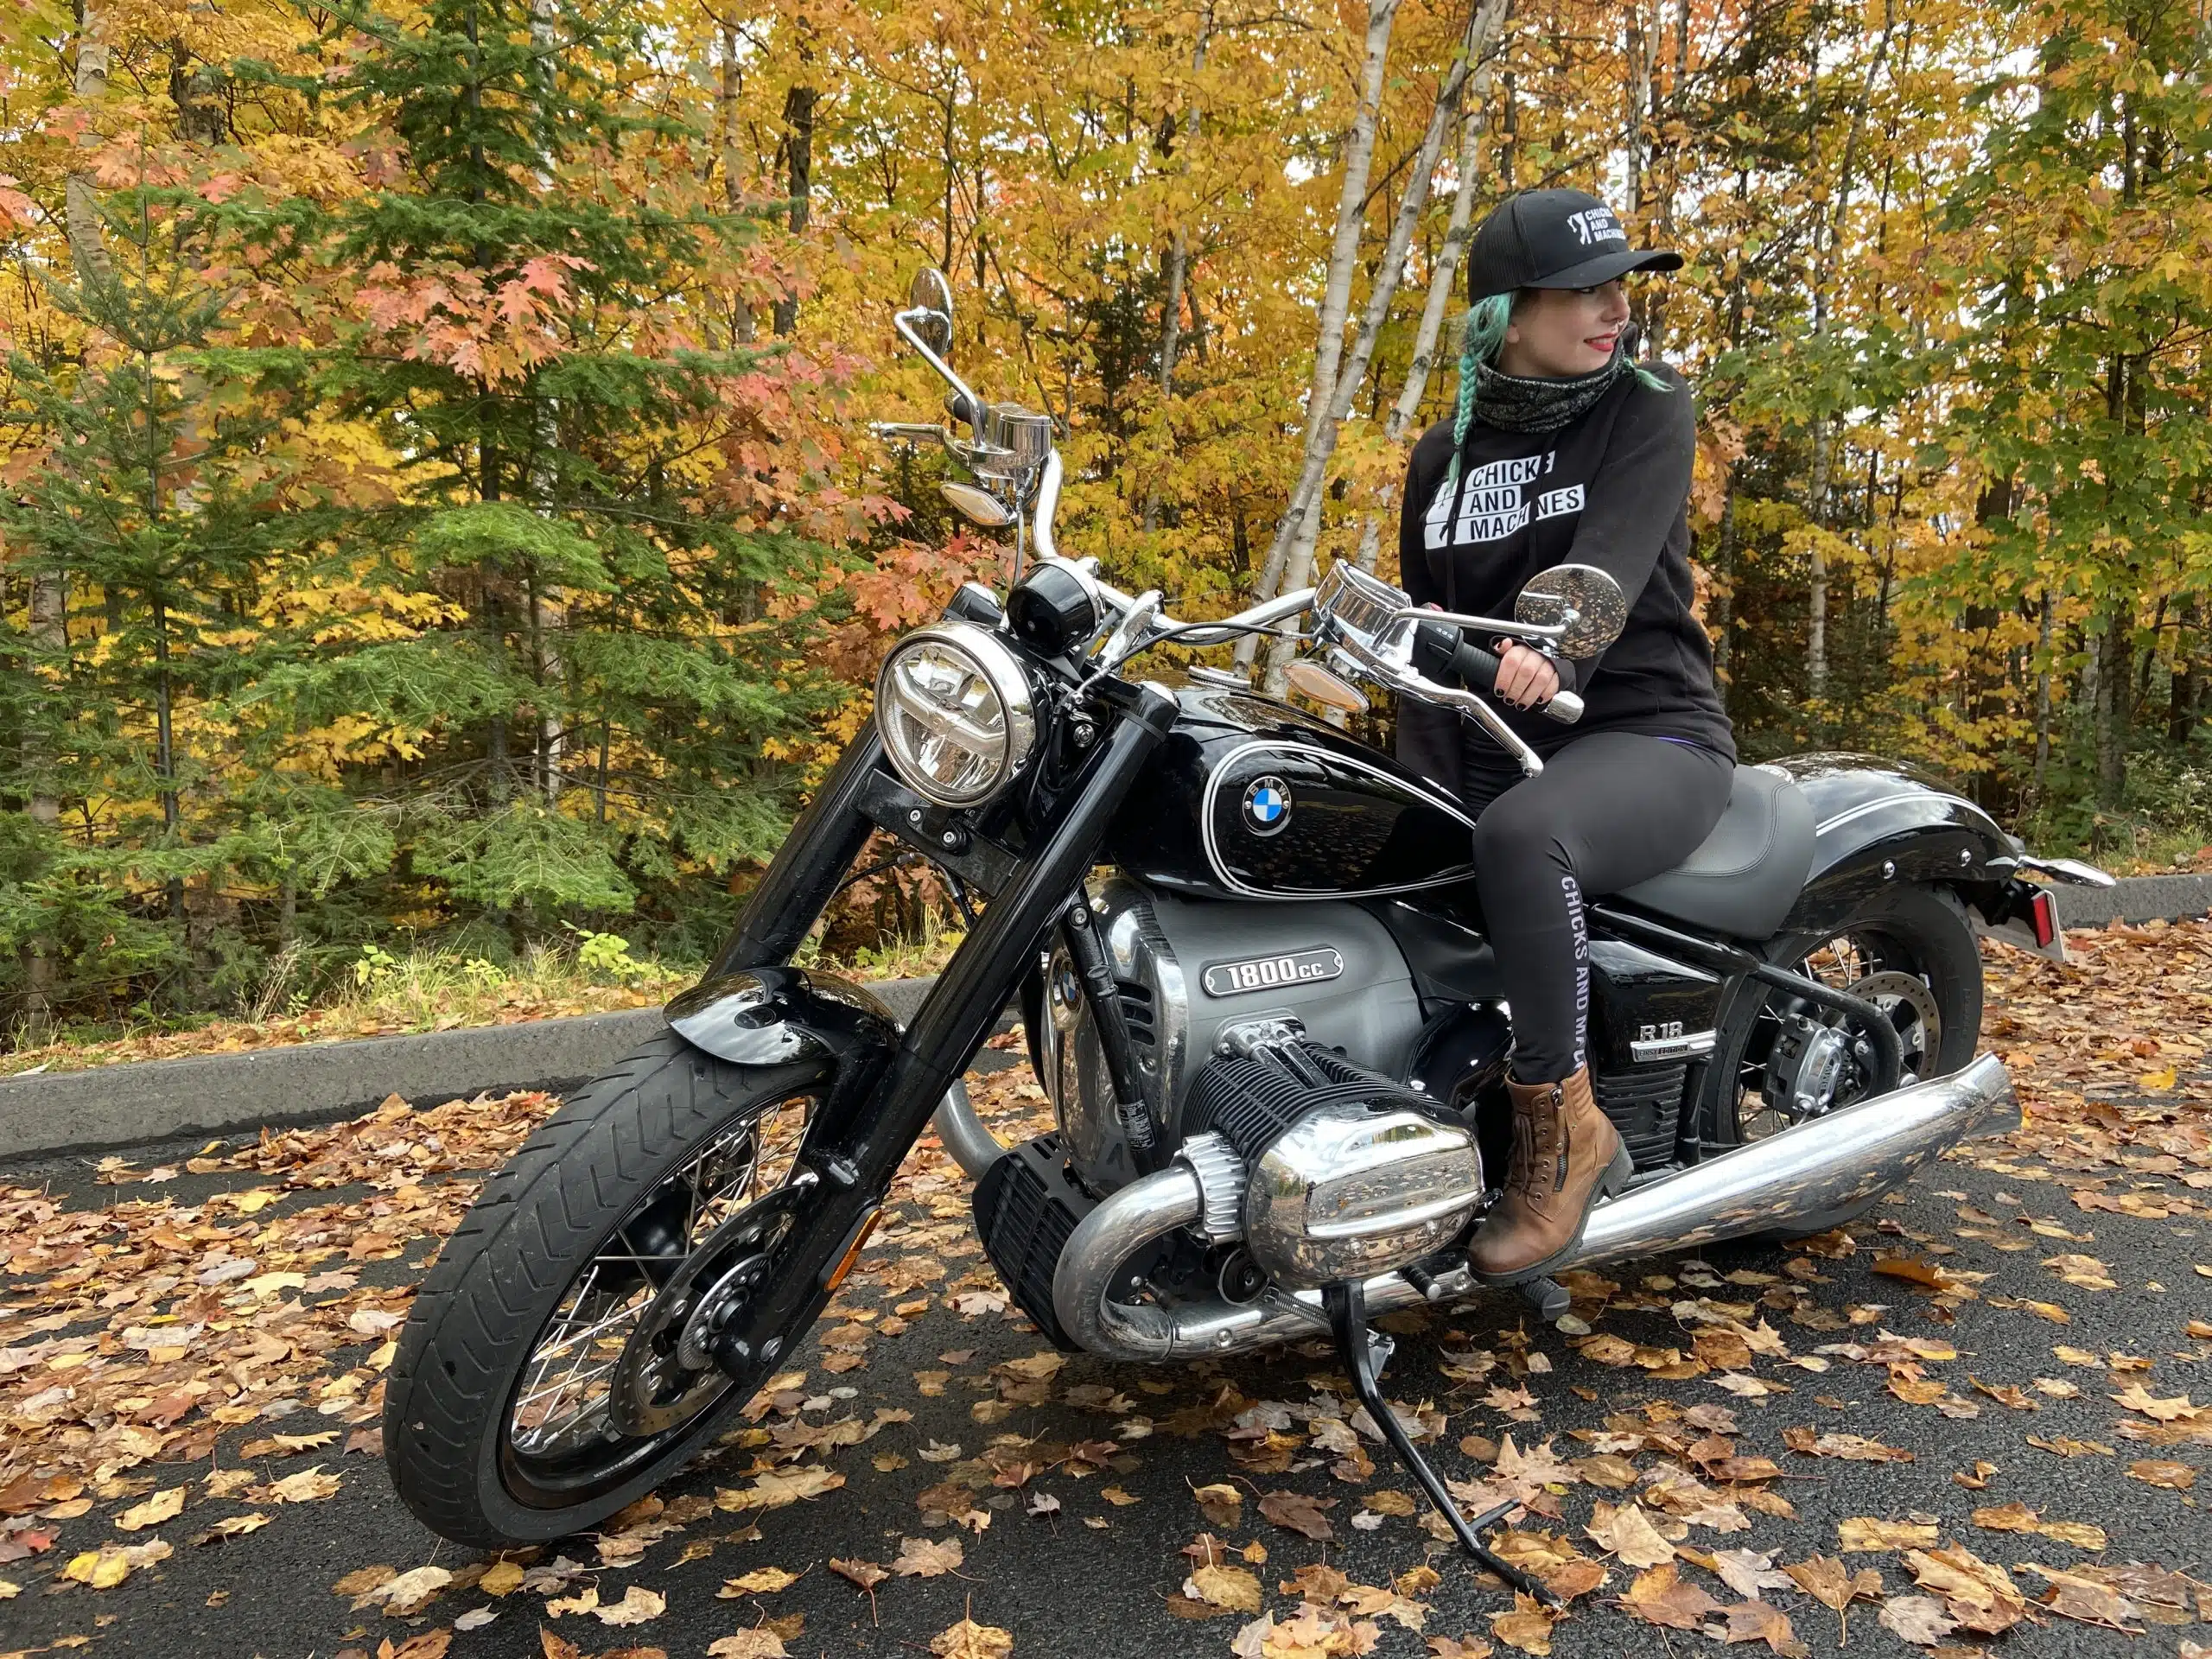 La saison de moto est très courte, alors on se le demande: Faut-il être pas bien dans la tête pour rouler au Québec?